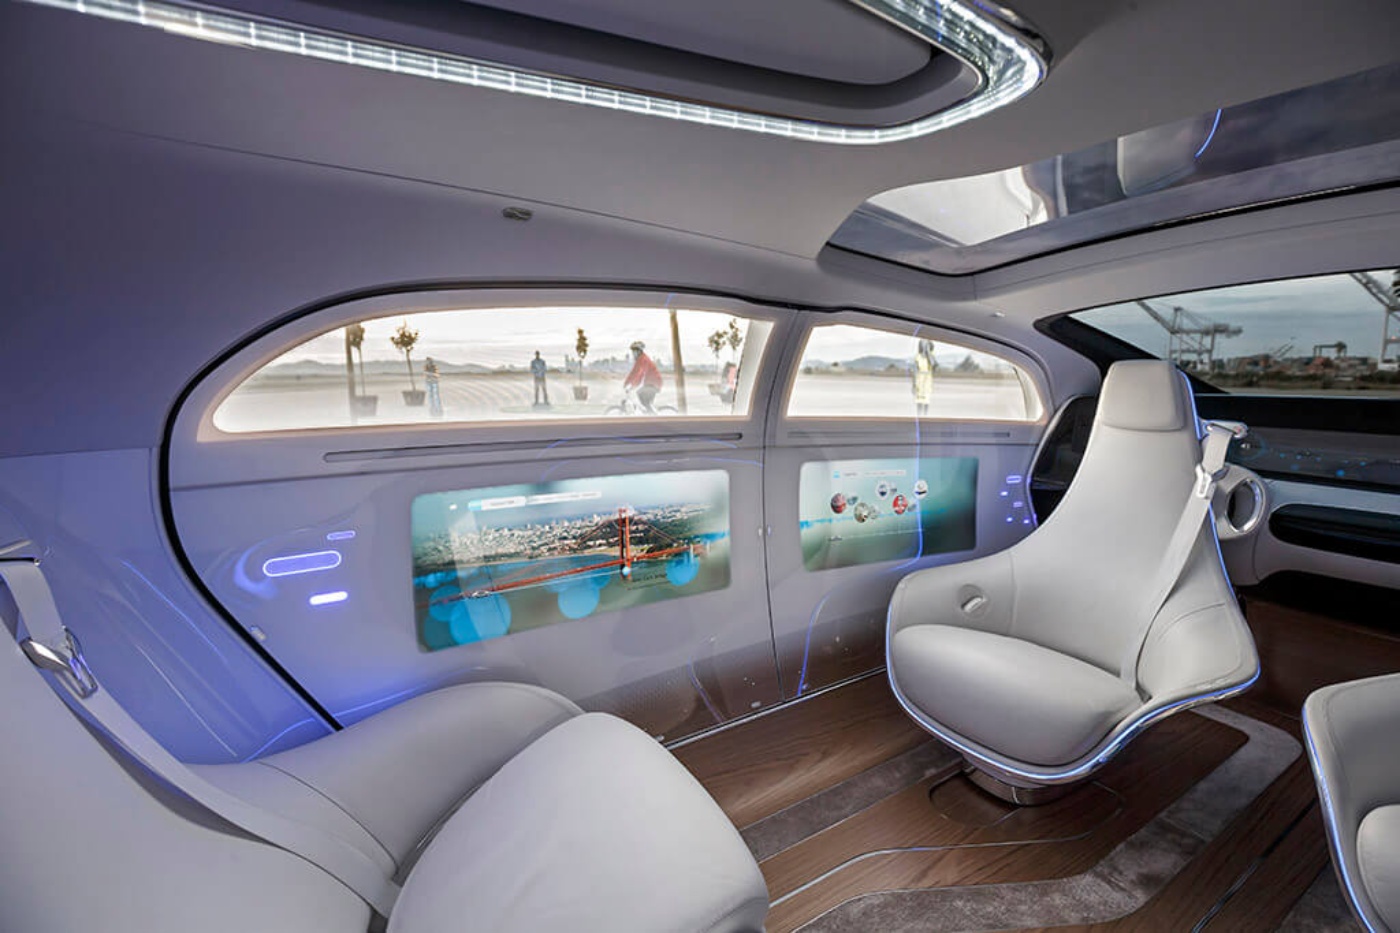 Wie ein zweites Wohnzimmer: Die Innenräume von Autos werden flexibler und gemütlicher © Daimler 